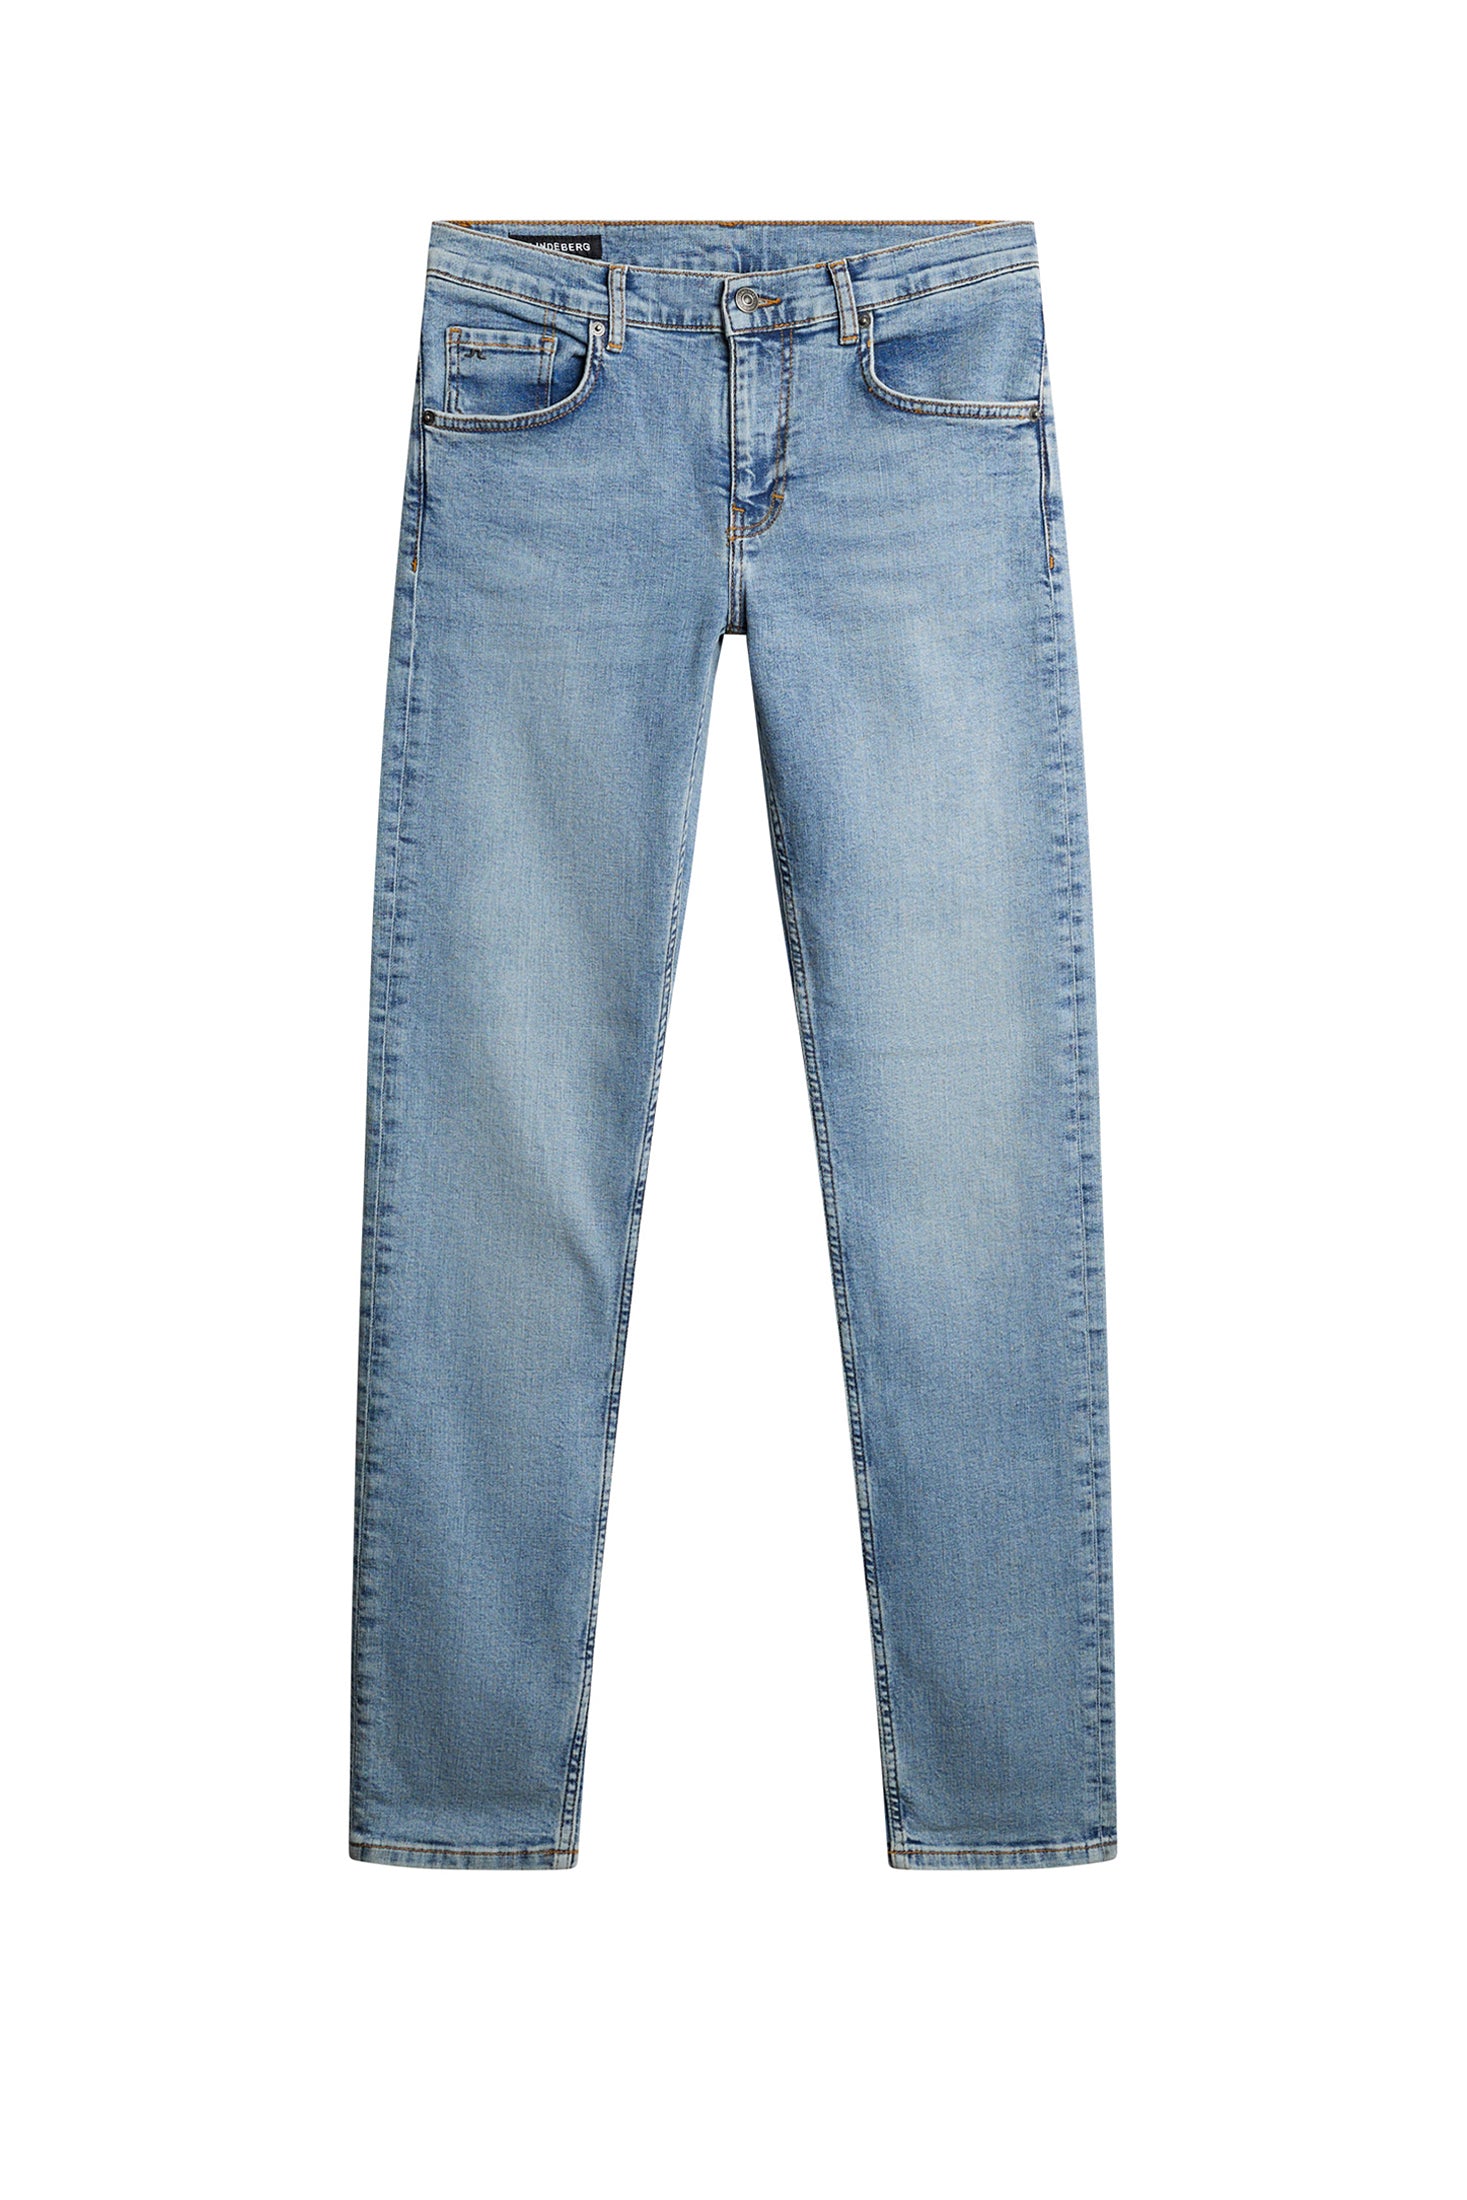 Timeless Jeans for Men - J.Lindeberg